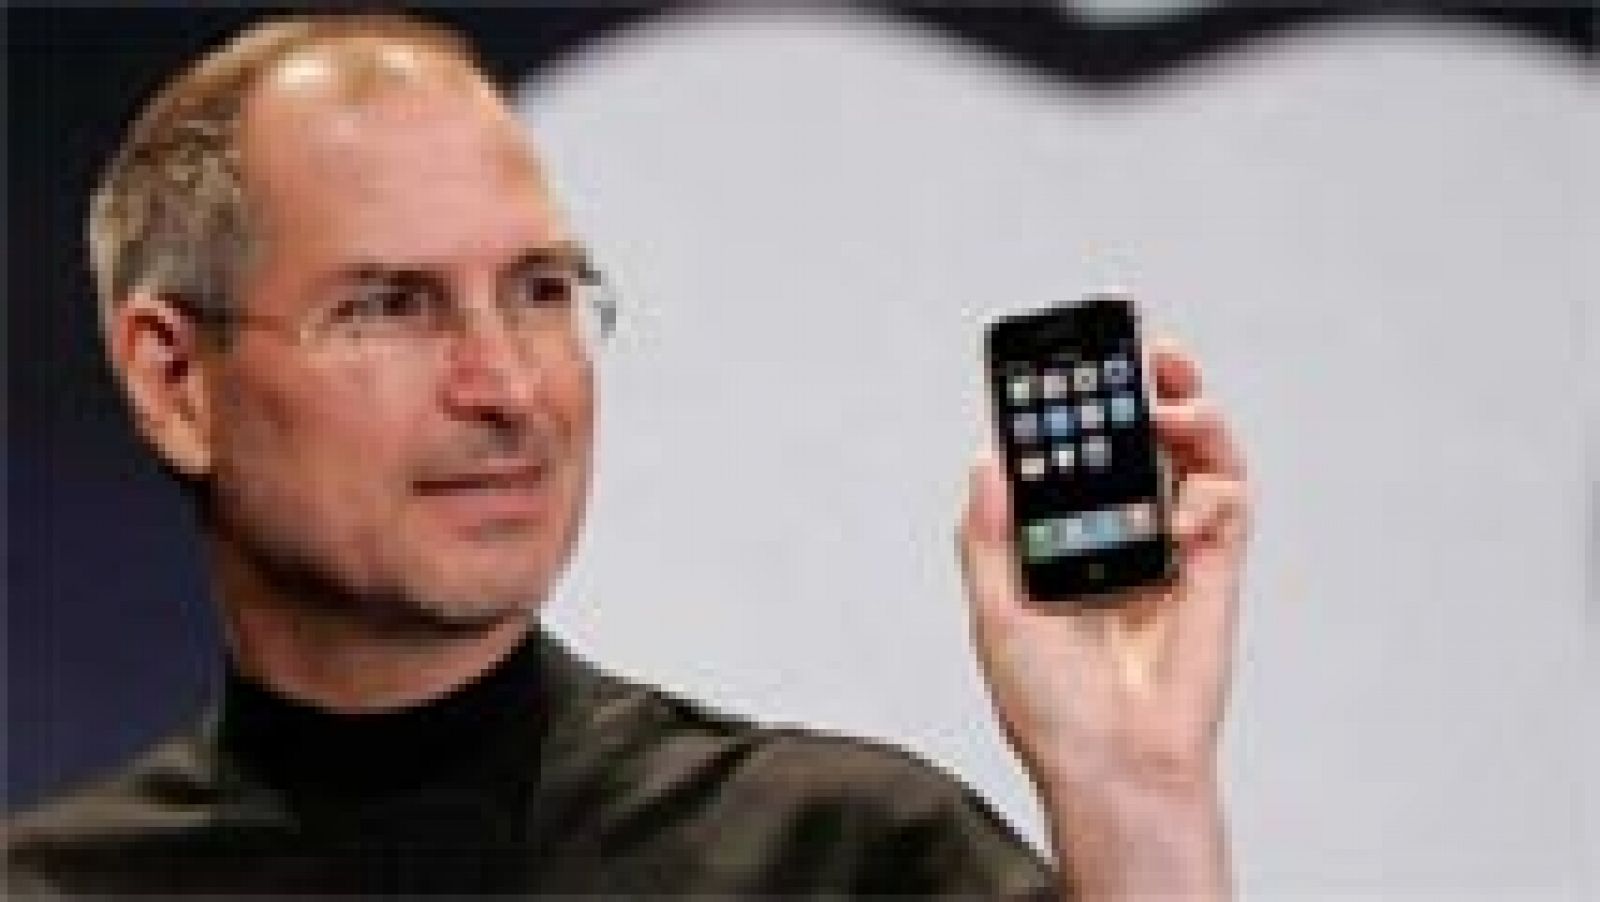 El revolucionario teléfono móvil iPhone cumple este jueves diez años desde que su primera generación llegó a las tiendas, un periodo en el que el gigante tecnológico Apple ha vendido más de mil millones de unidades de su producto estrella."El iPhone 